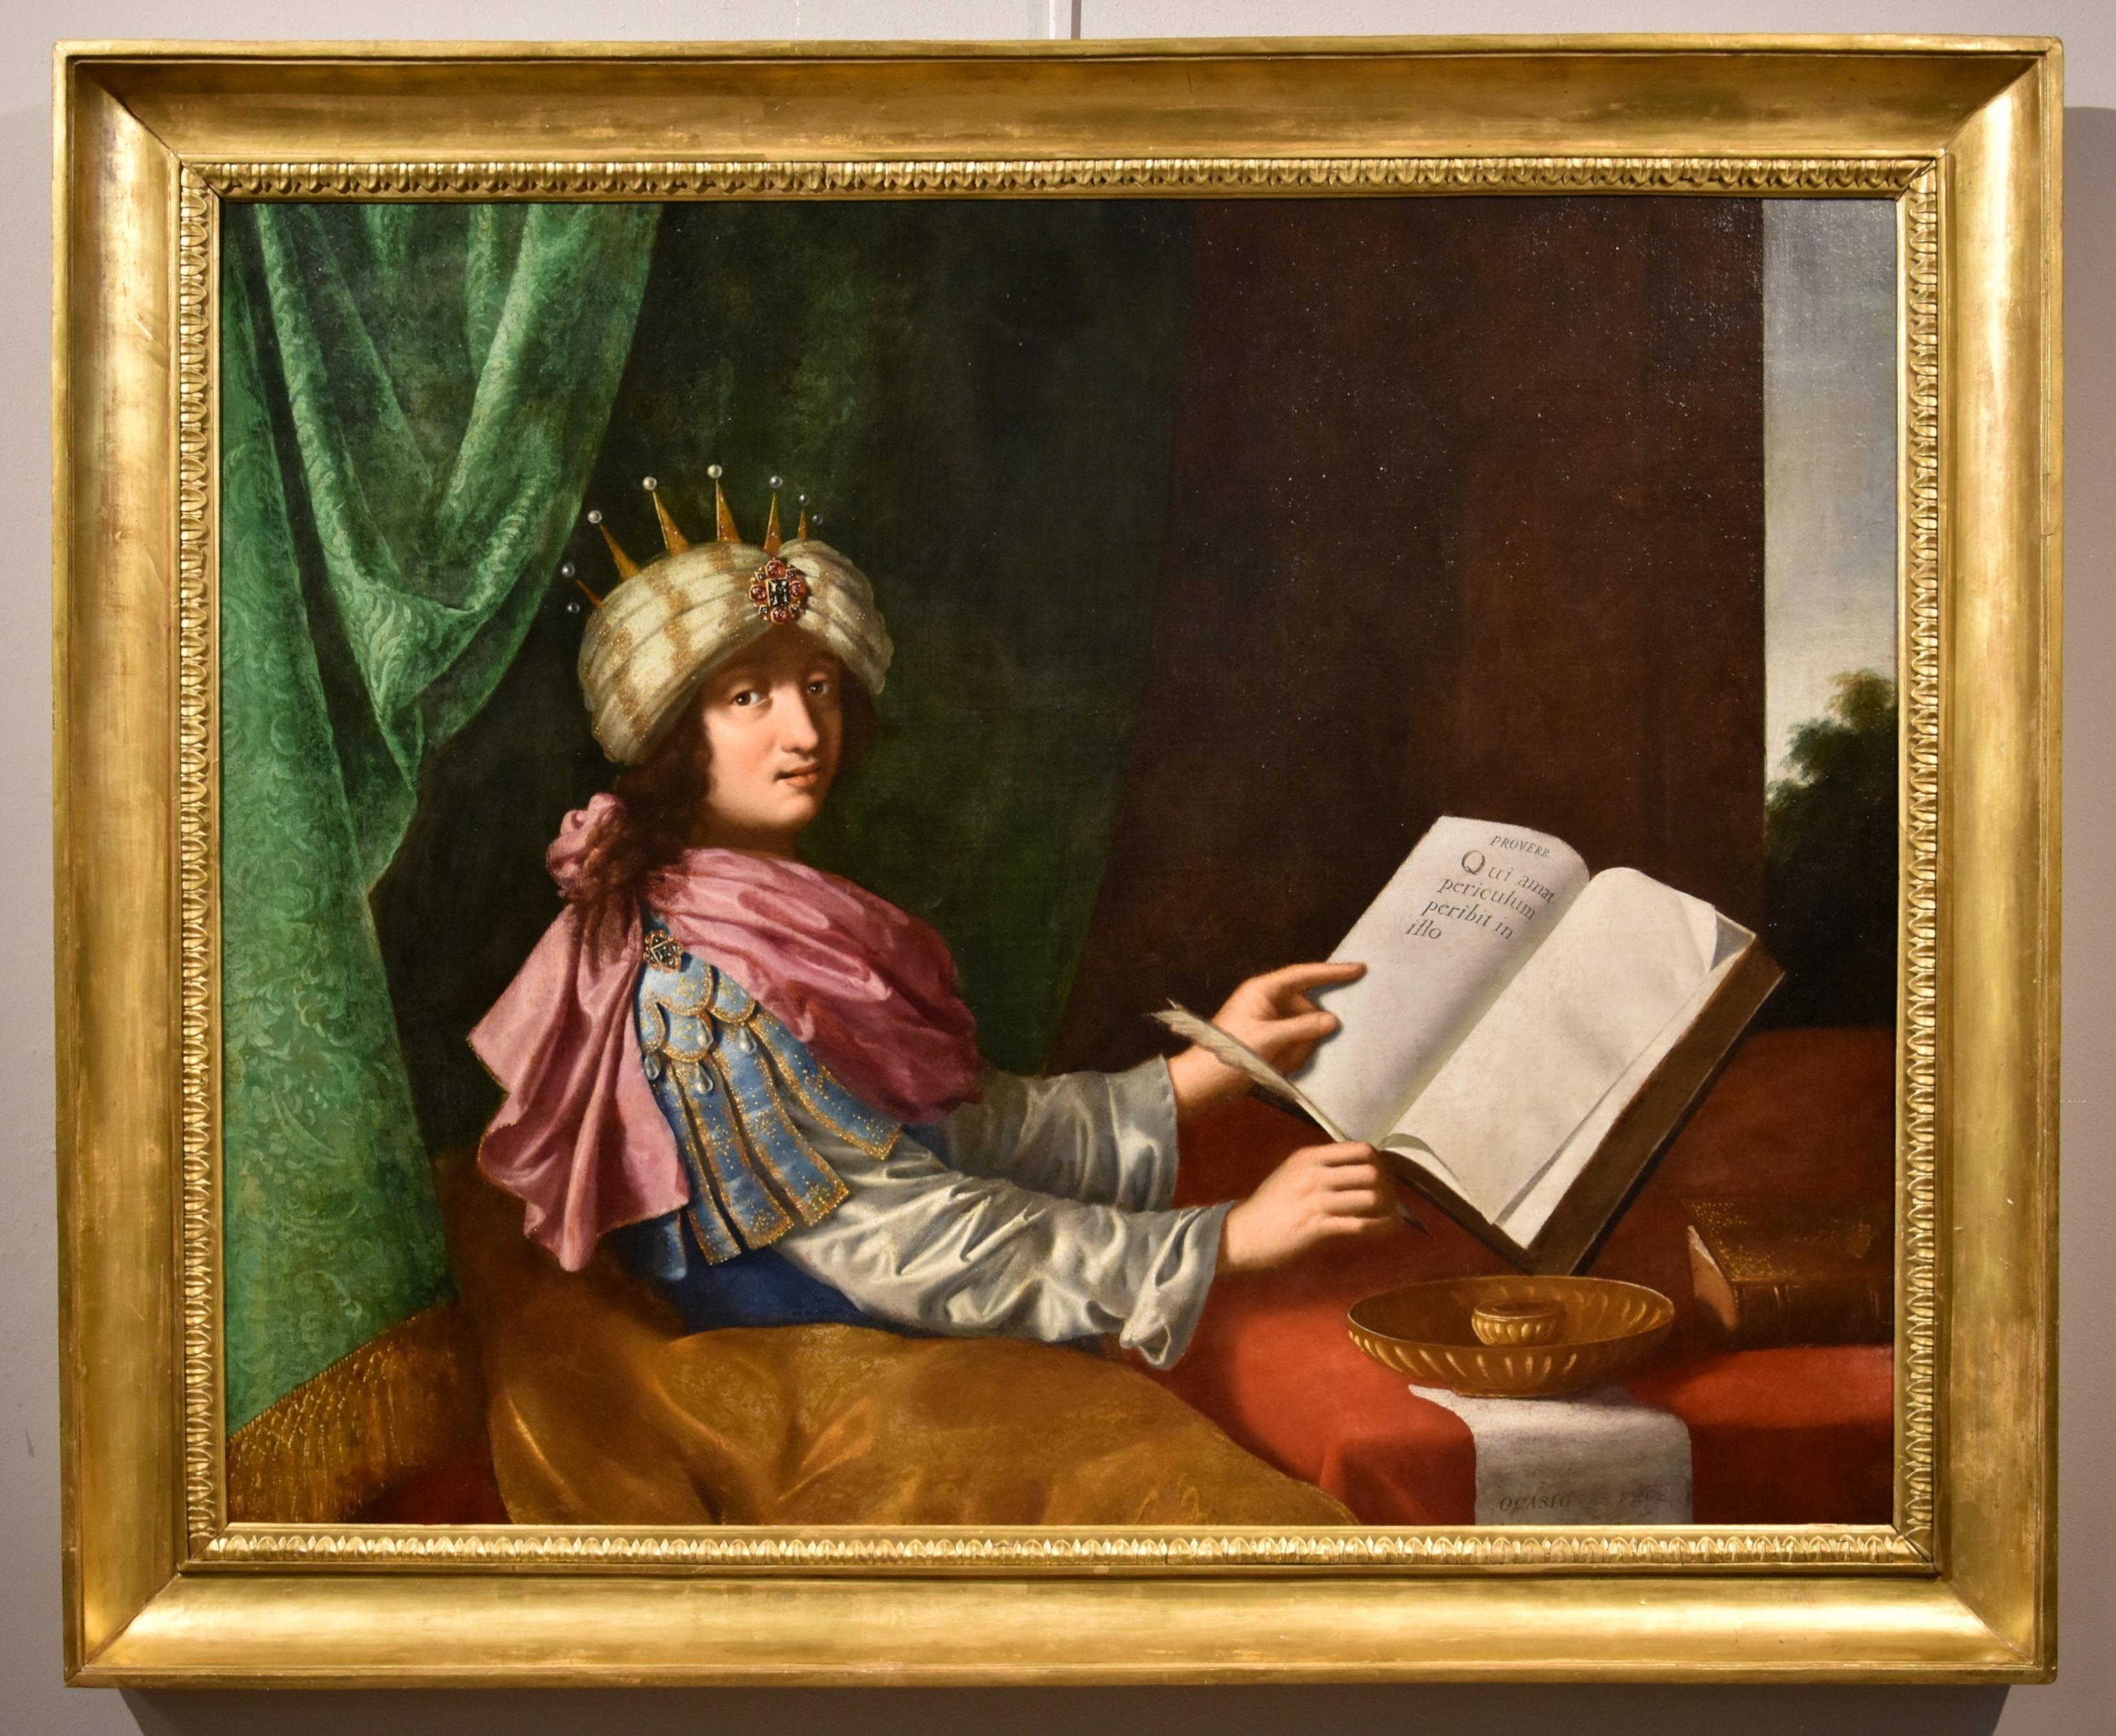 Michele Desubleo (Maubeuge, 1602 - Parma, 1676) Portrait Painting - Portrait King Solomon Desubleo Paint Oil on canvas Old master 17th Century Art